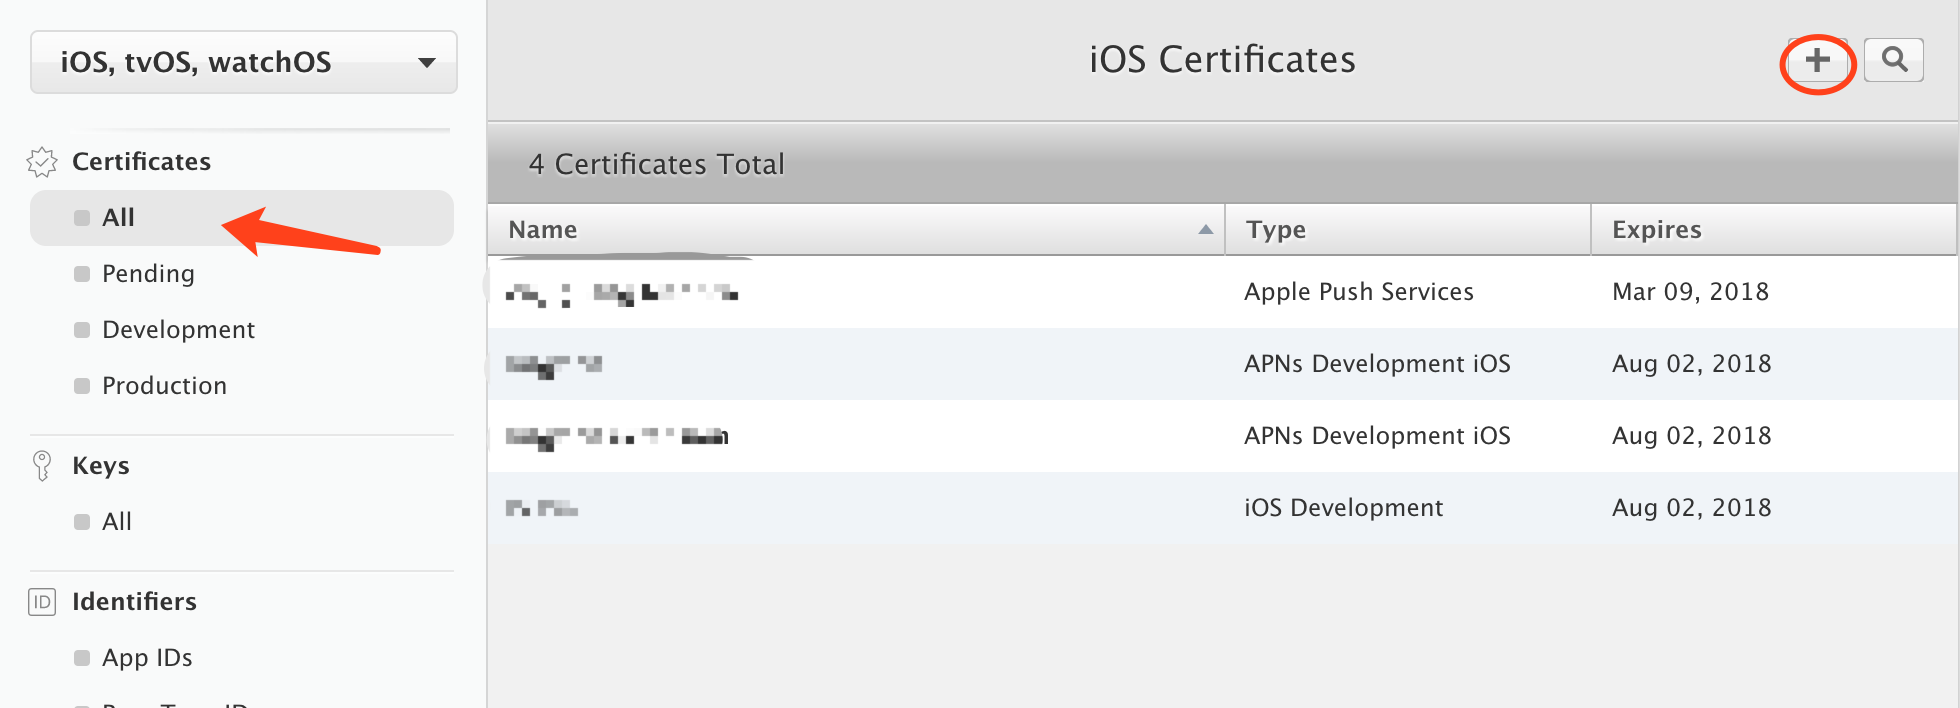 iOS Certificate Setup Guide JiGuang Docs